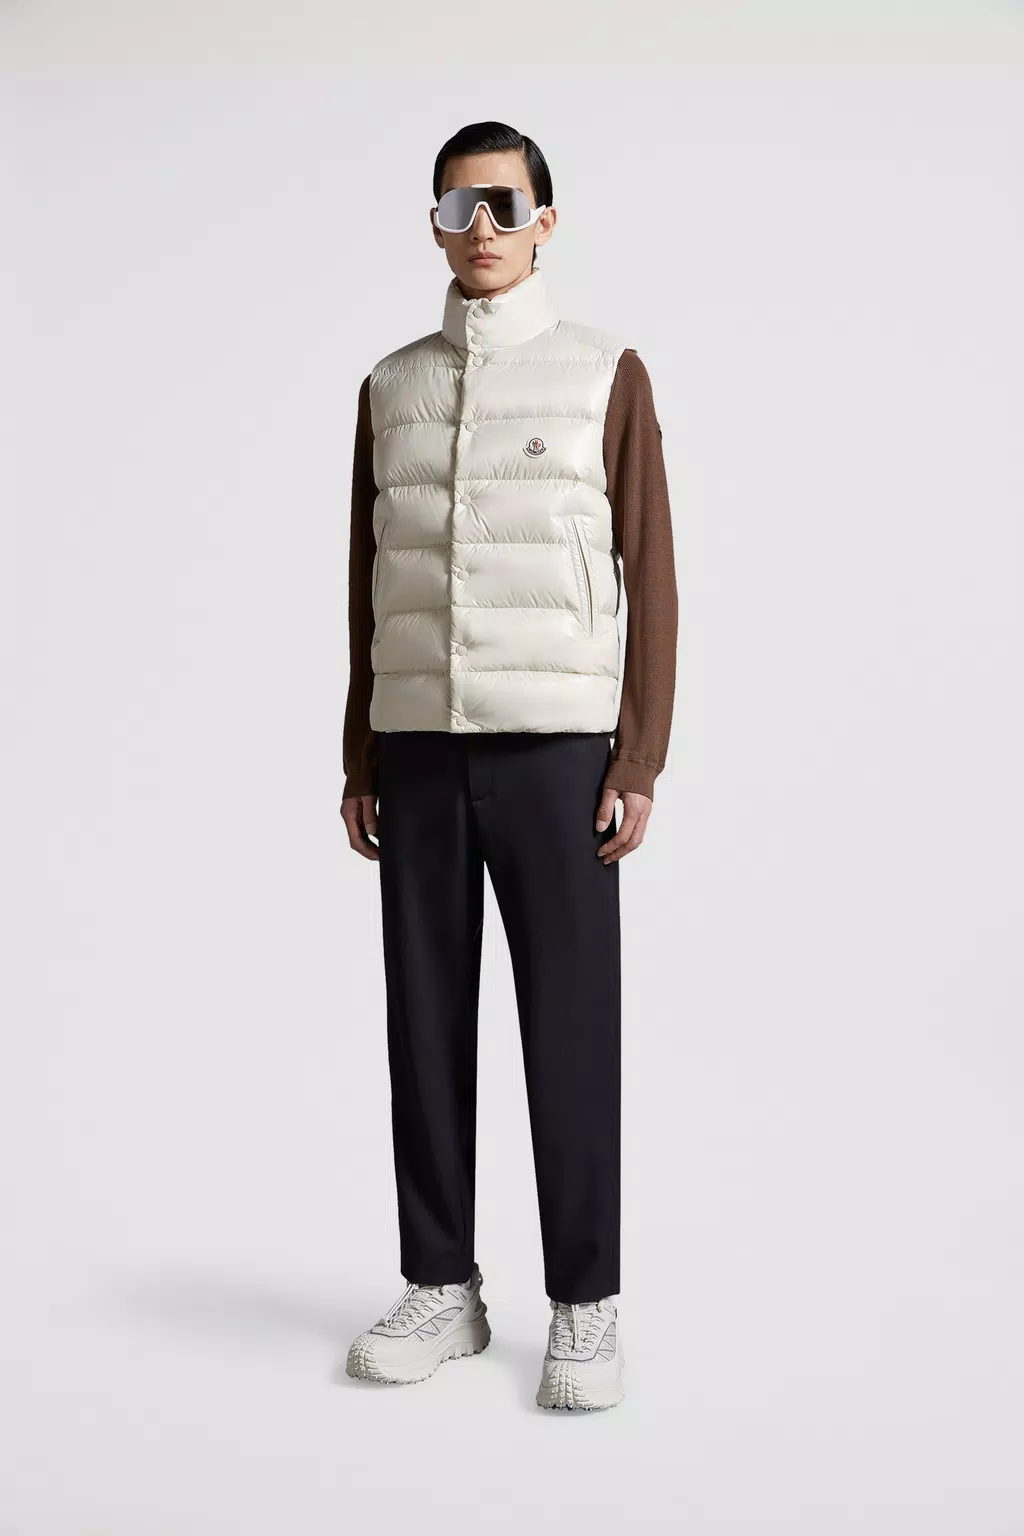 Men's Outerwear - Down Jackets, Coats, Parkas & Vests